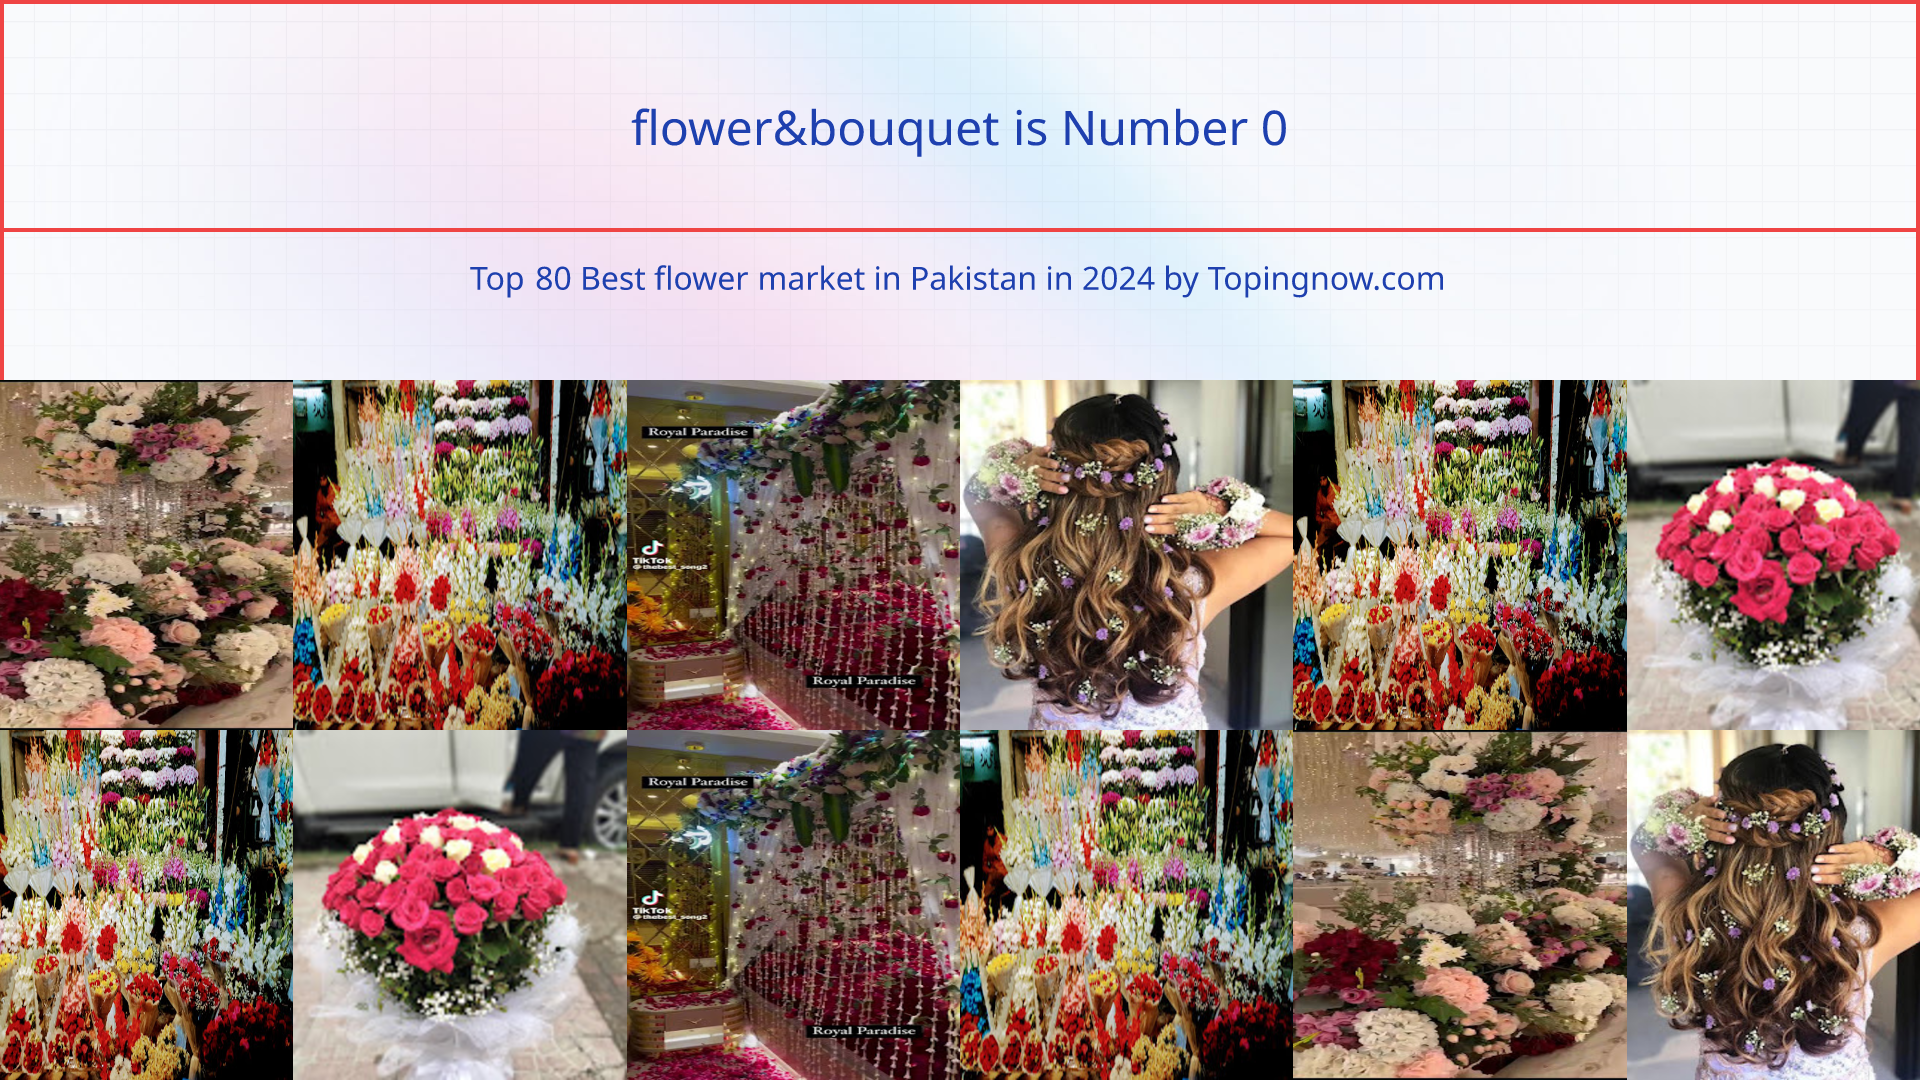 flower&bouquet: Top 80 Best flower market in Pakistan in 2024